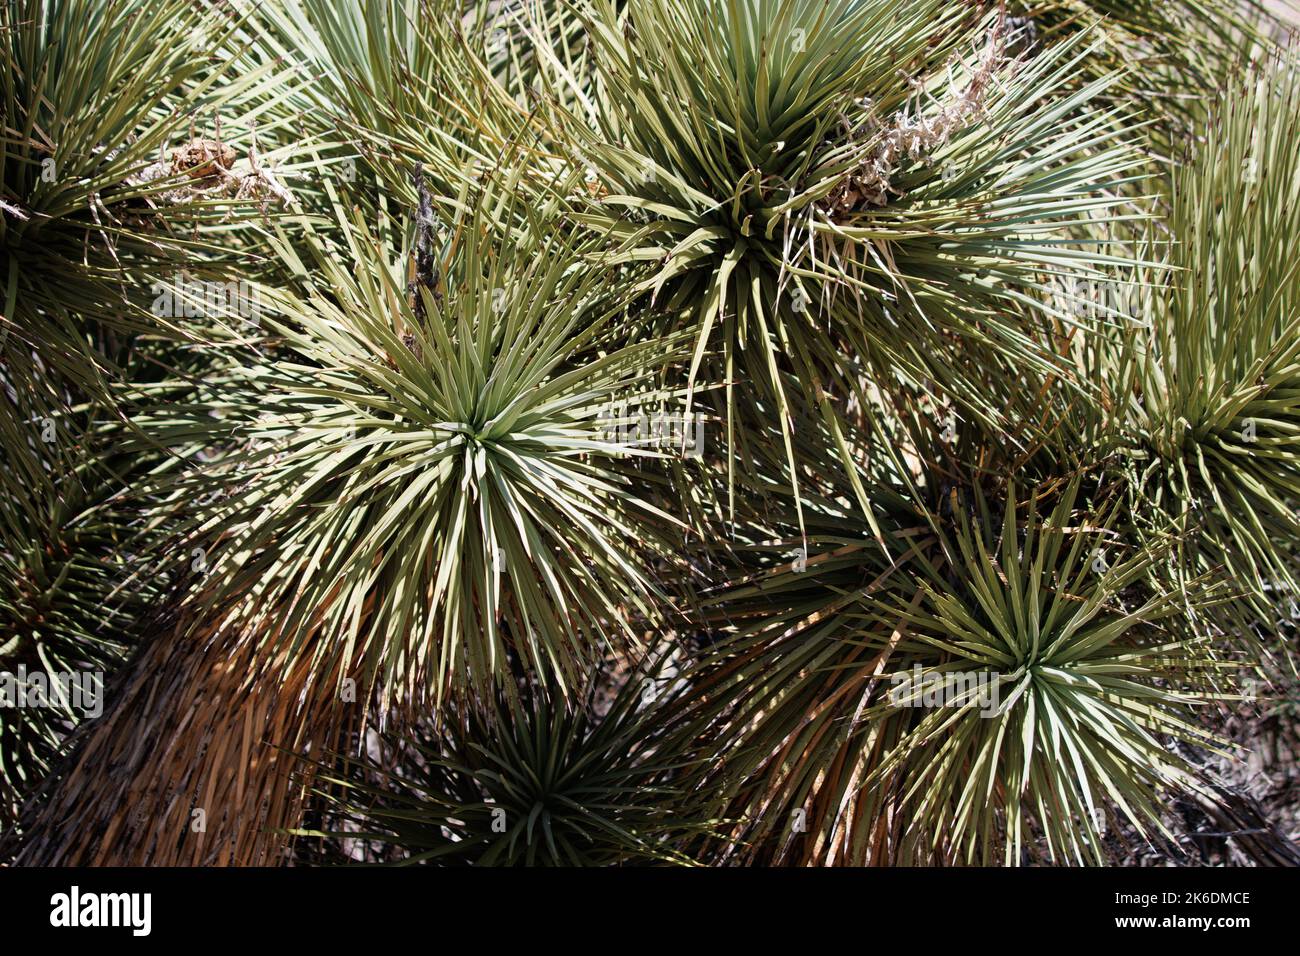 Grüne, einfach rosettierte, distal cuspidate glabrosige, lineare Blätter von Yucca Brevifolia, Asparagaceae, beheimatet in den San Bernardino Mountains, Sommer. Stockfoto